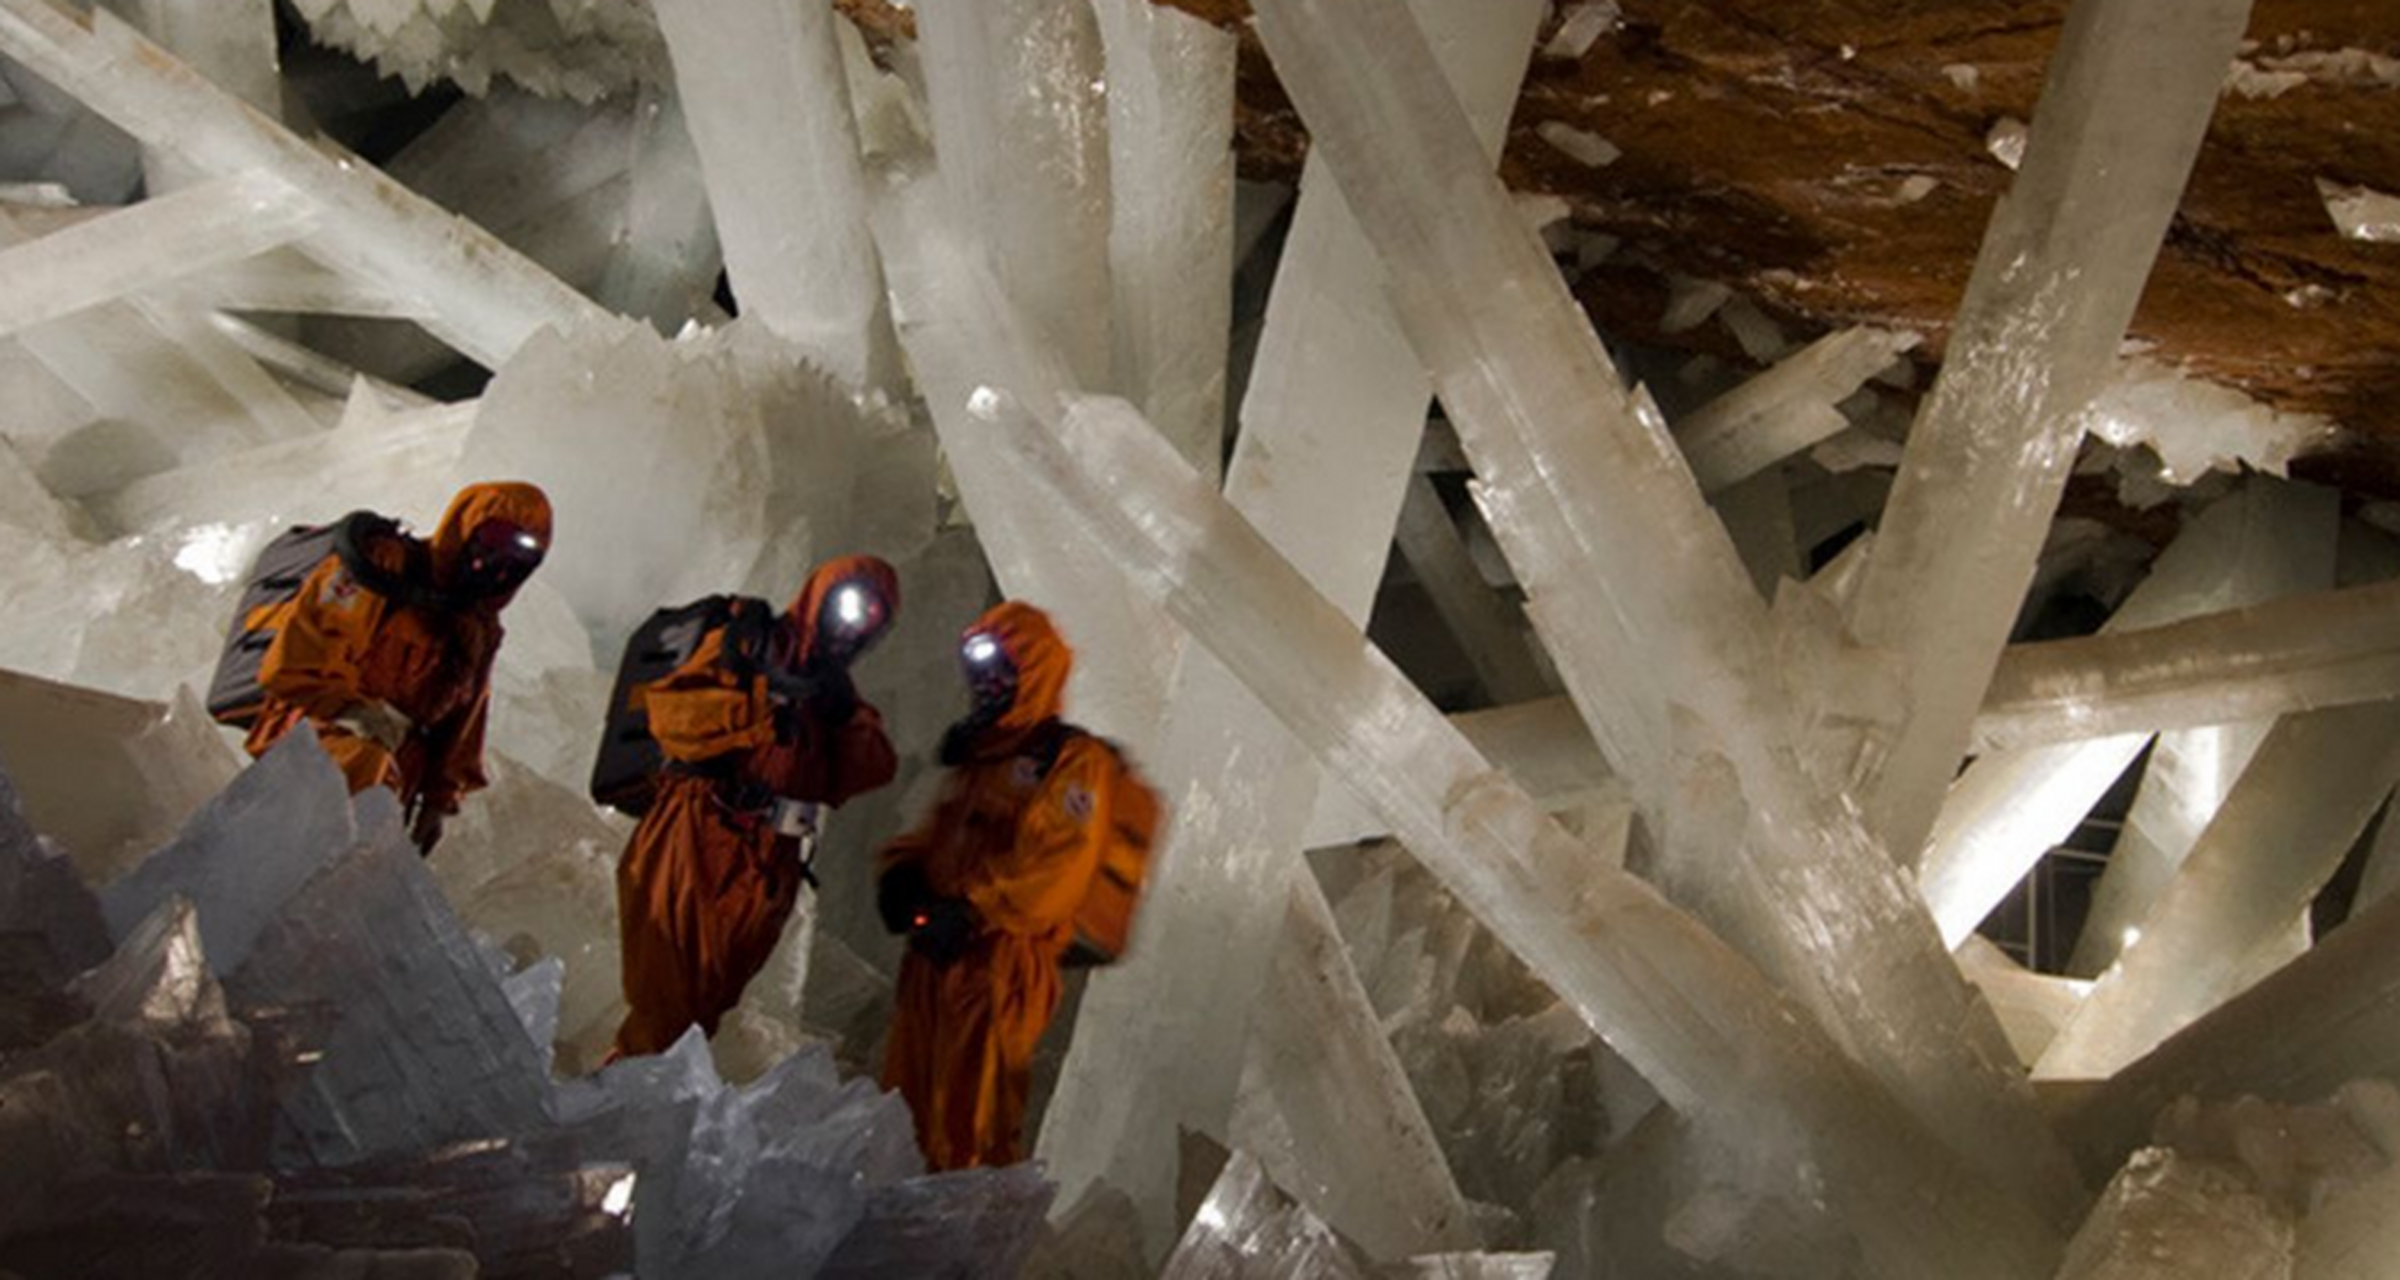 世界上最大的水晶洞图片